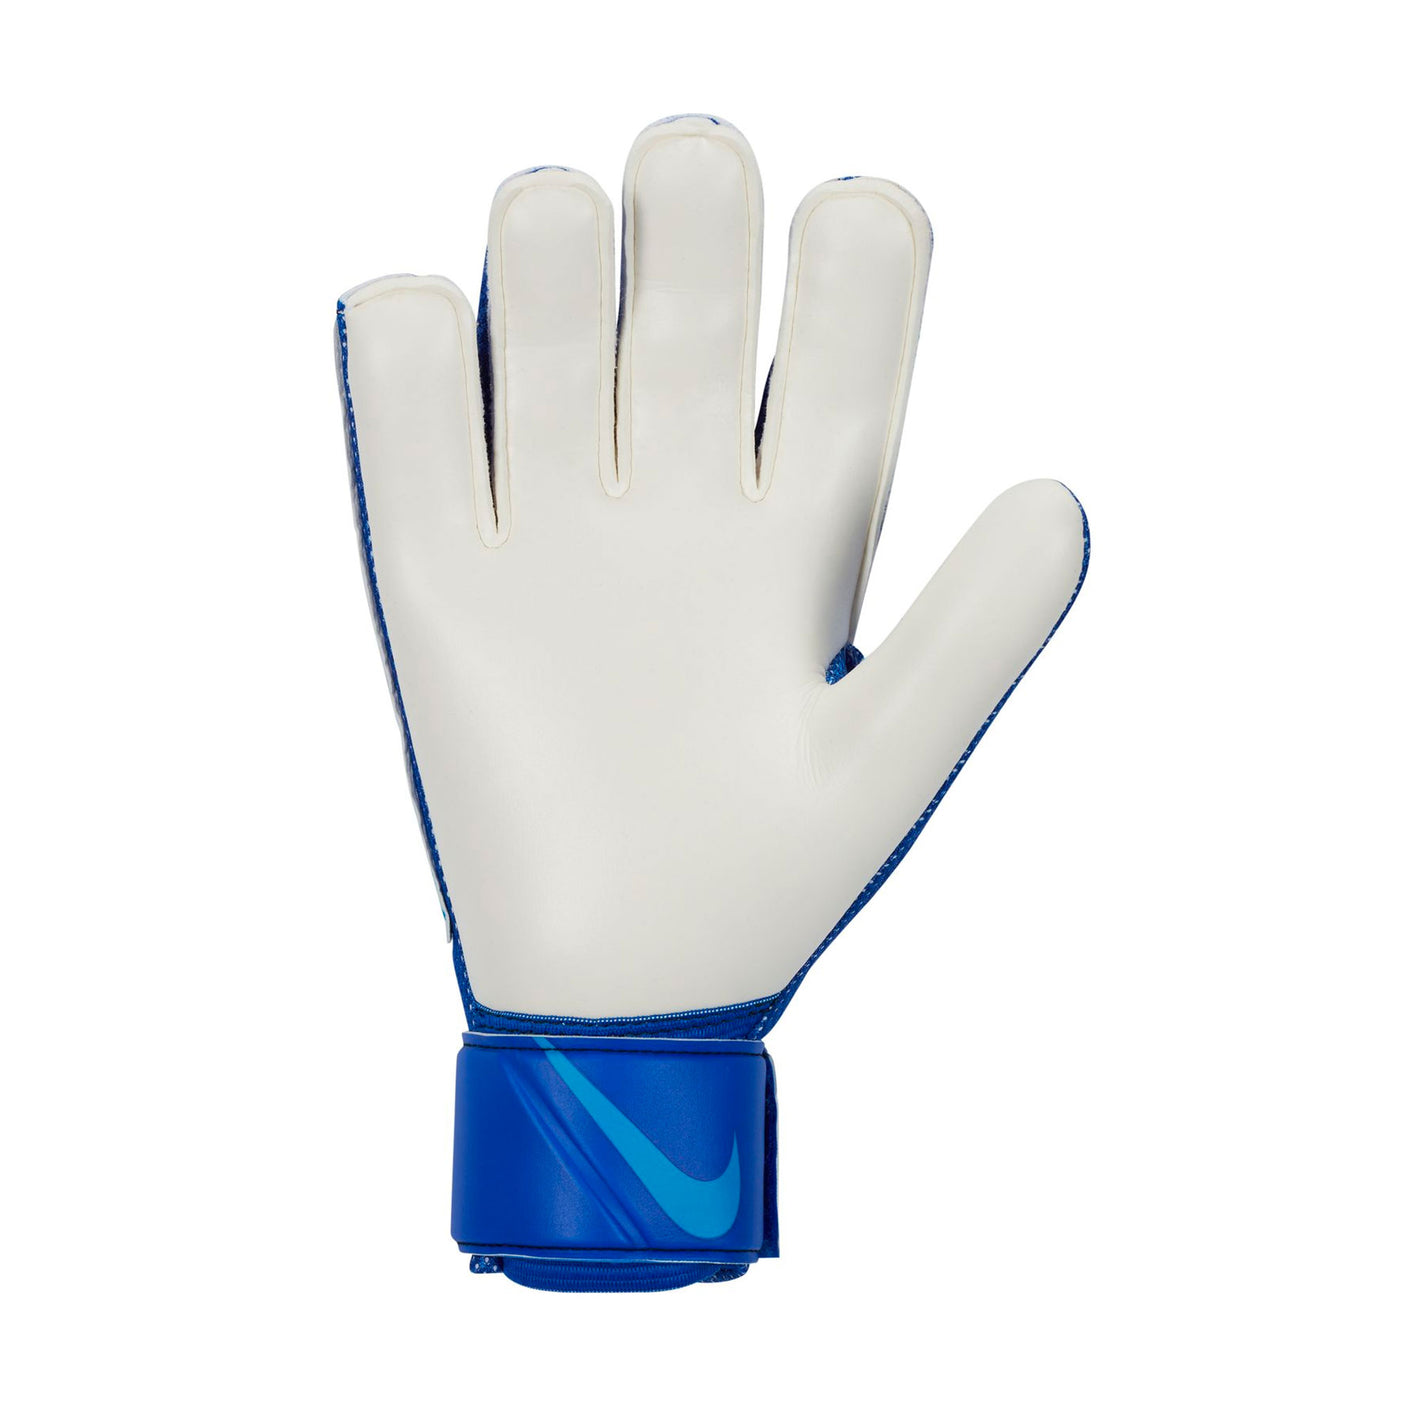 Nike Men's Match Goalkeeper Gloves Light Marine/Blackened Blue Back